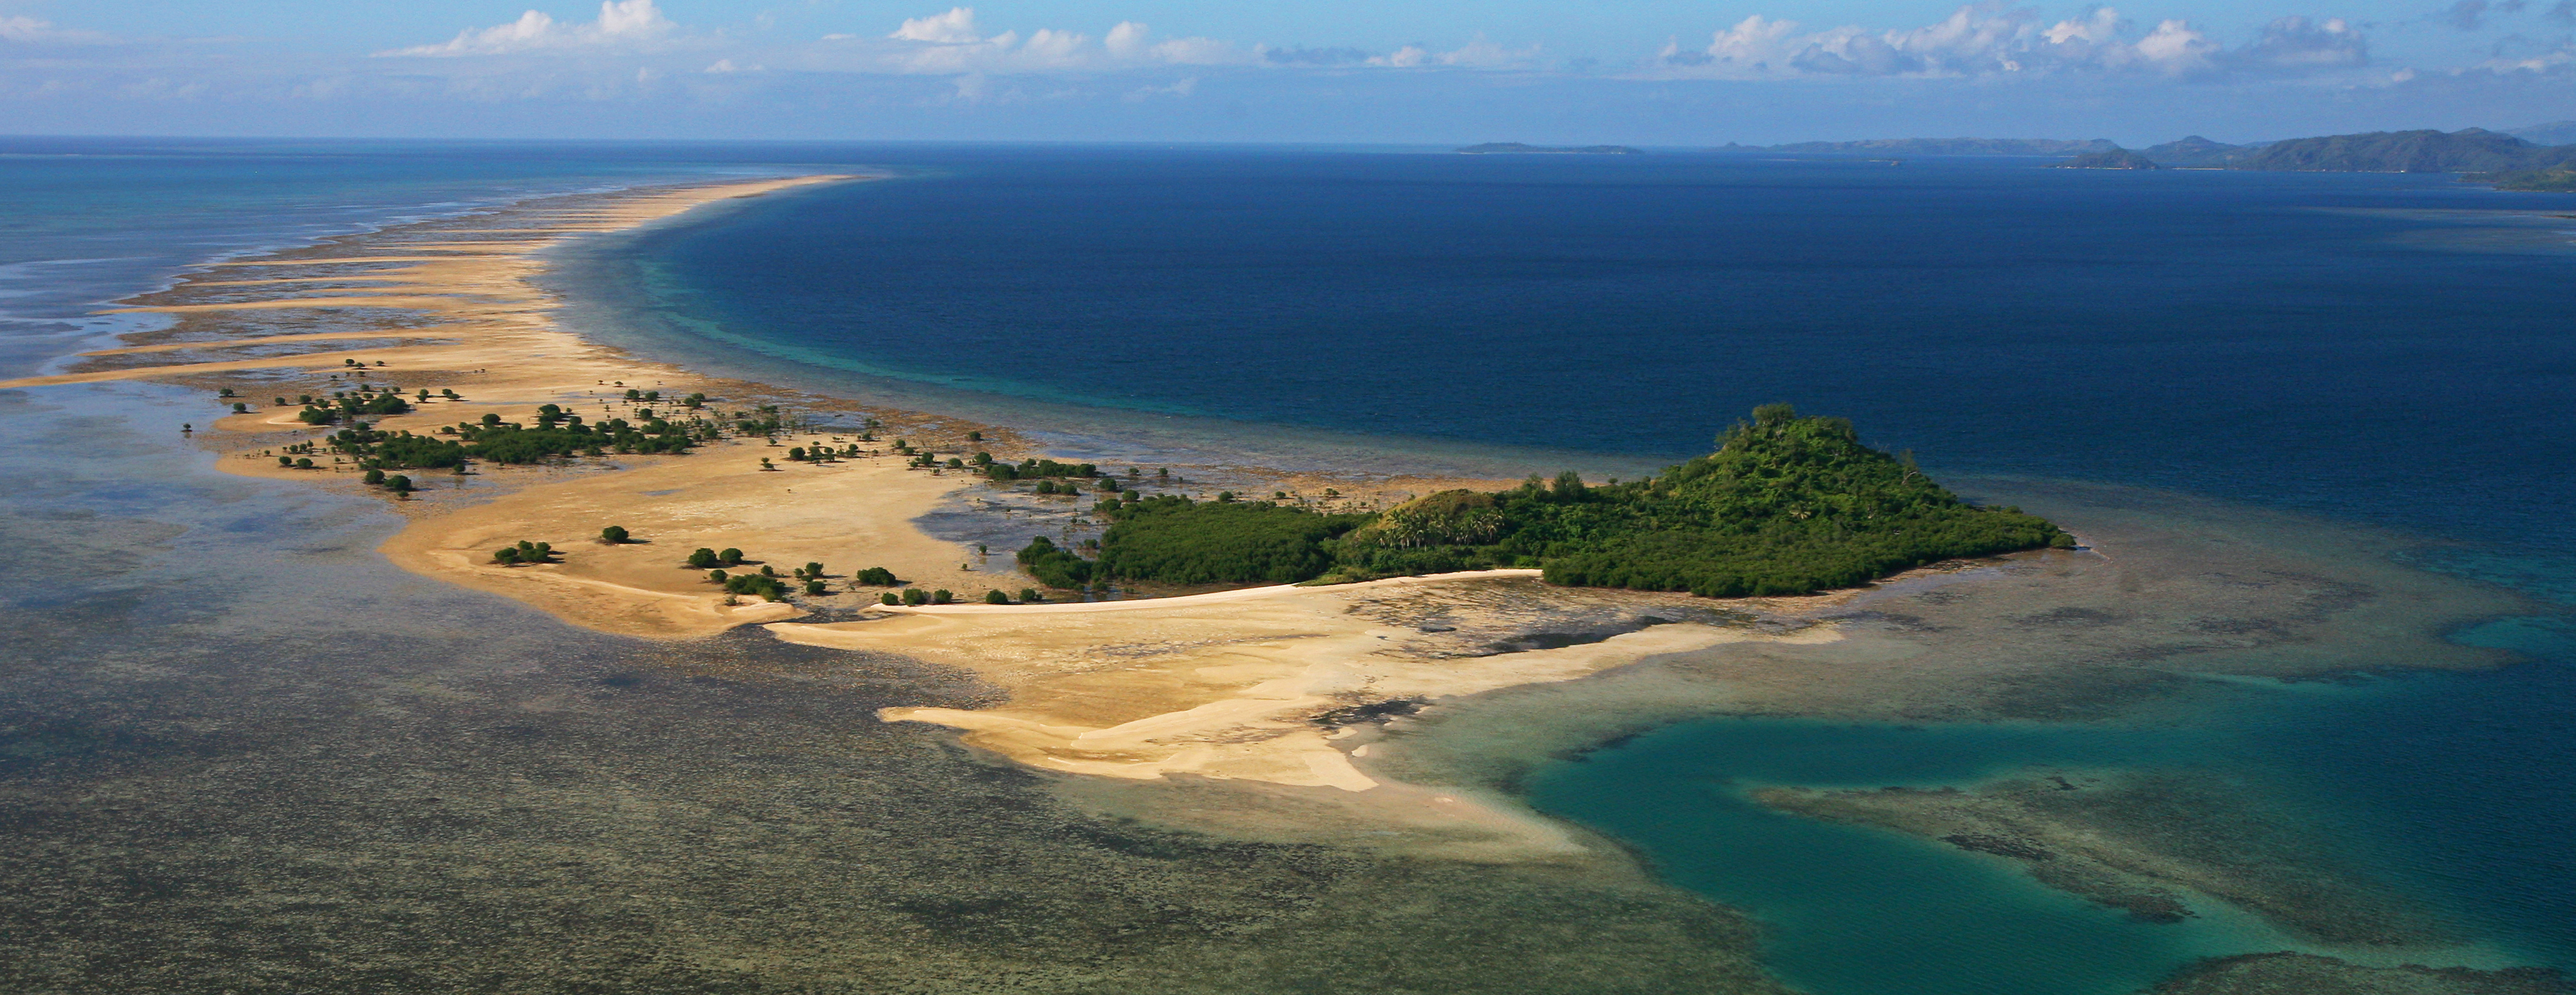 8 Private Islands for Sale: SauSau Island, Fiji